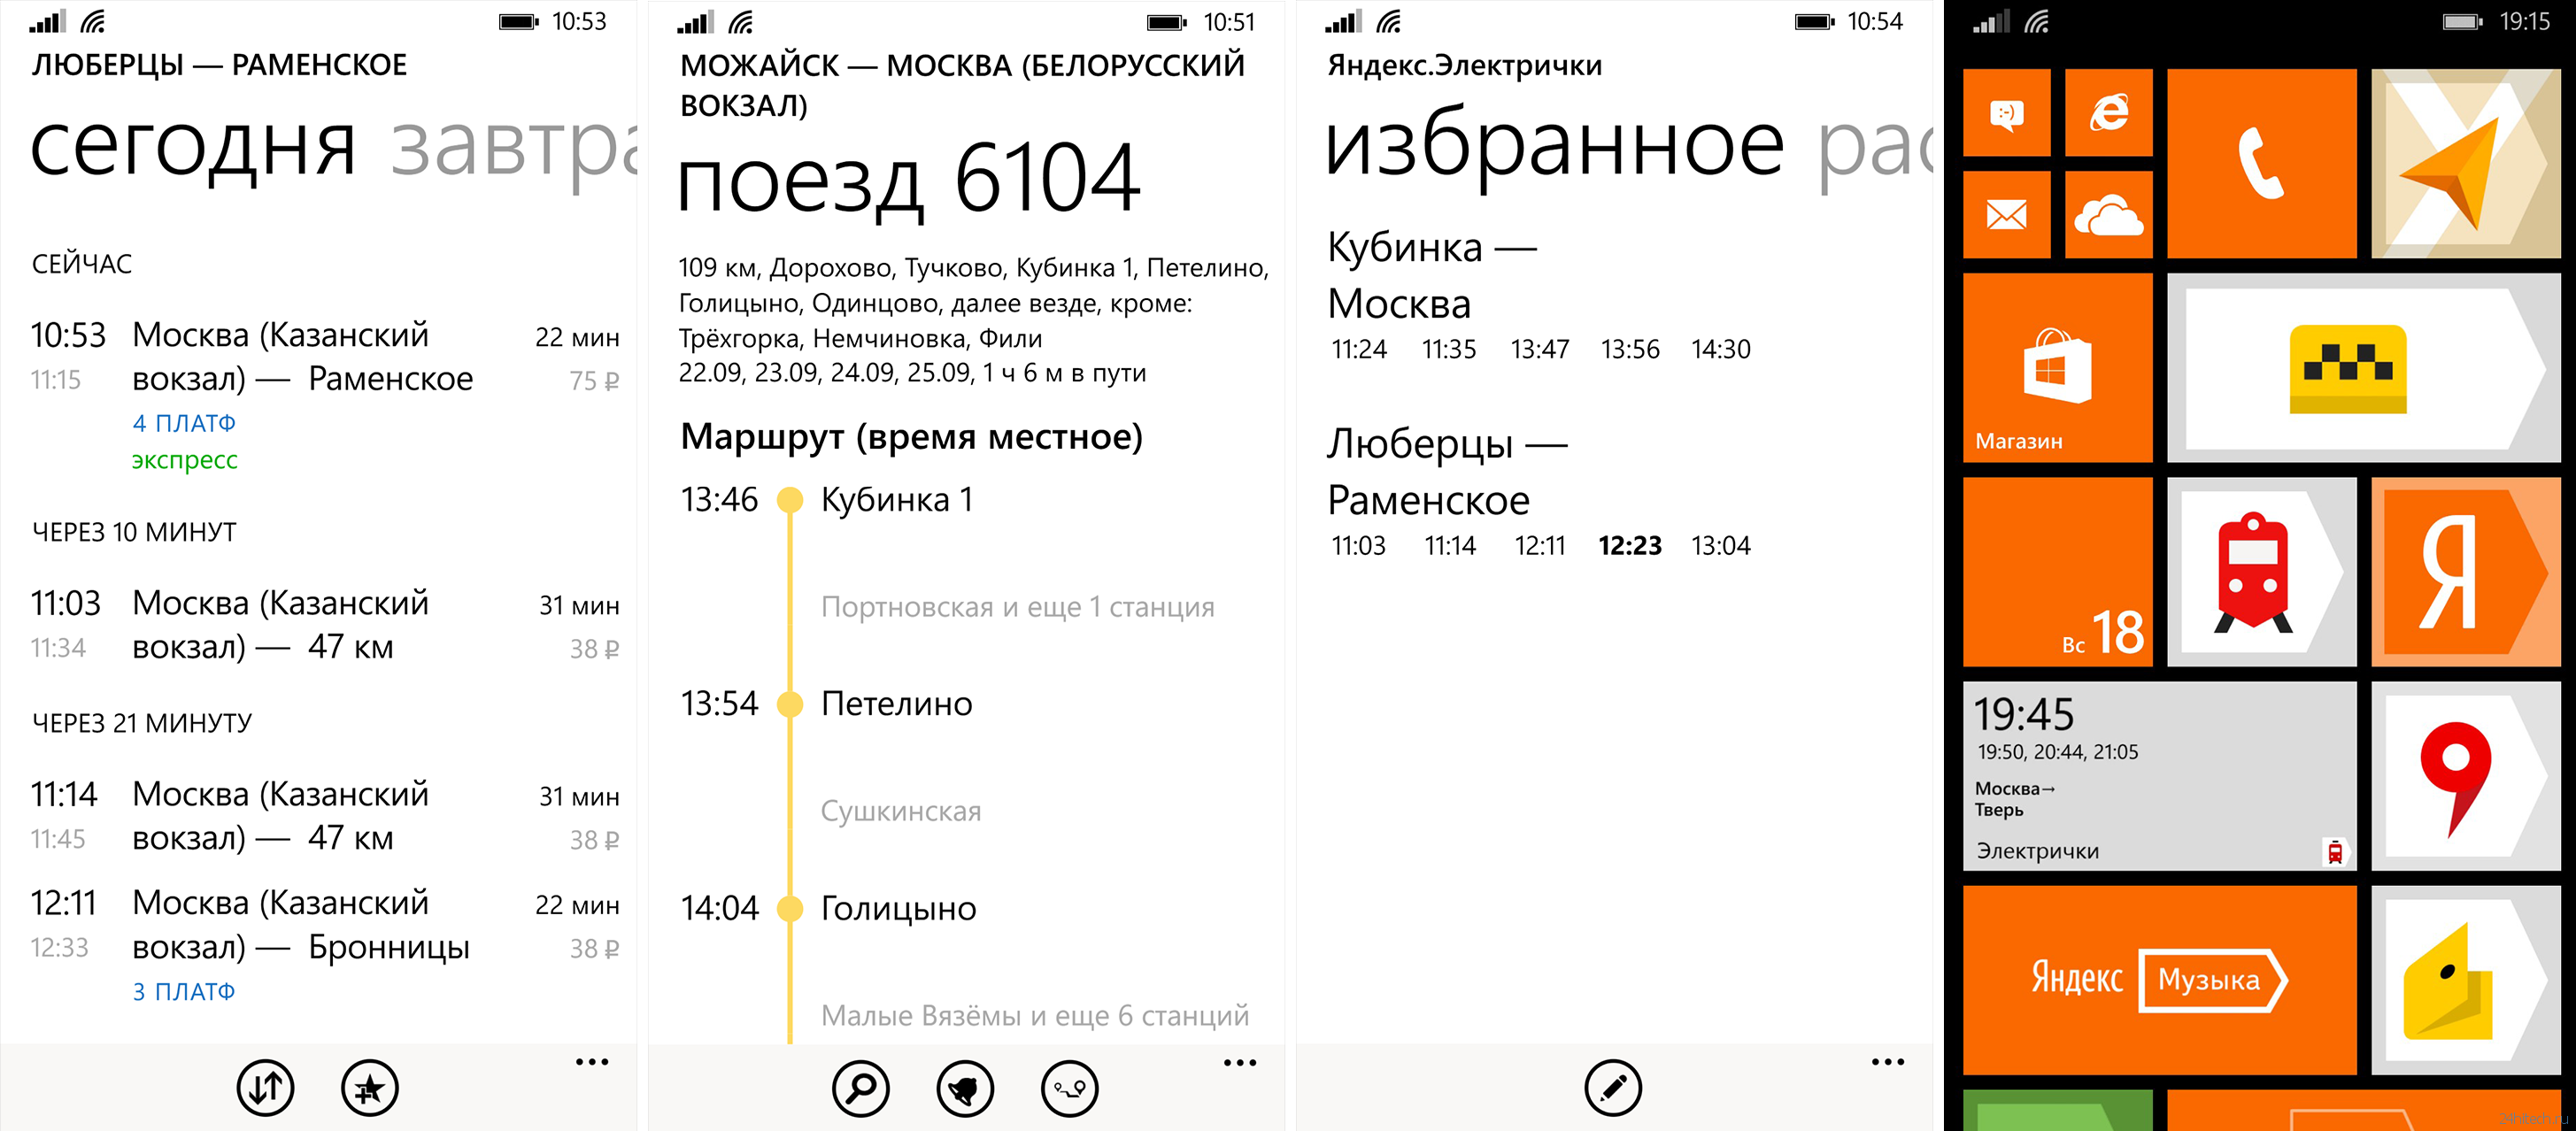 Приложение «Электрички» от Яндекса для Windows Phone и Windows 10 Mobile получило крупное обновление